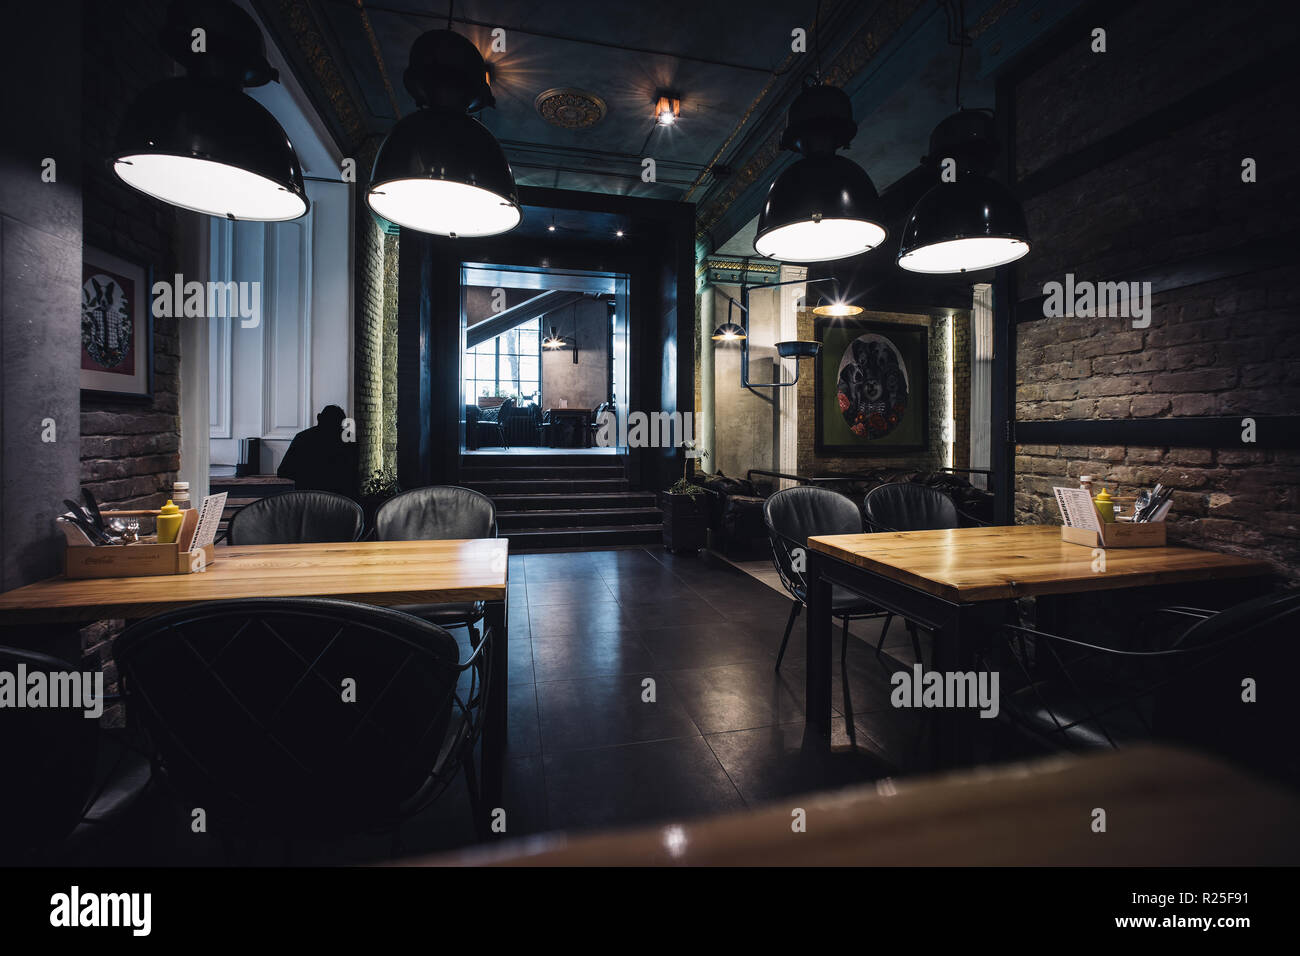 Loft moderno ristorante interno con accenti classici e atmosfera romanric Foto Stock